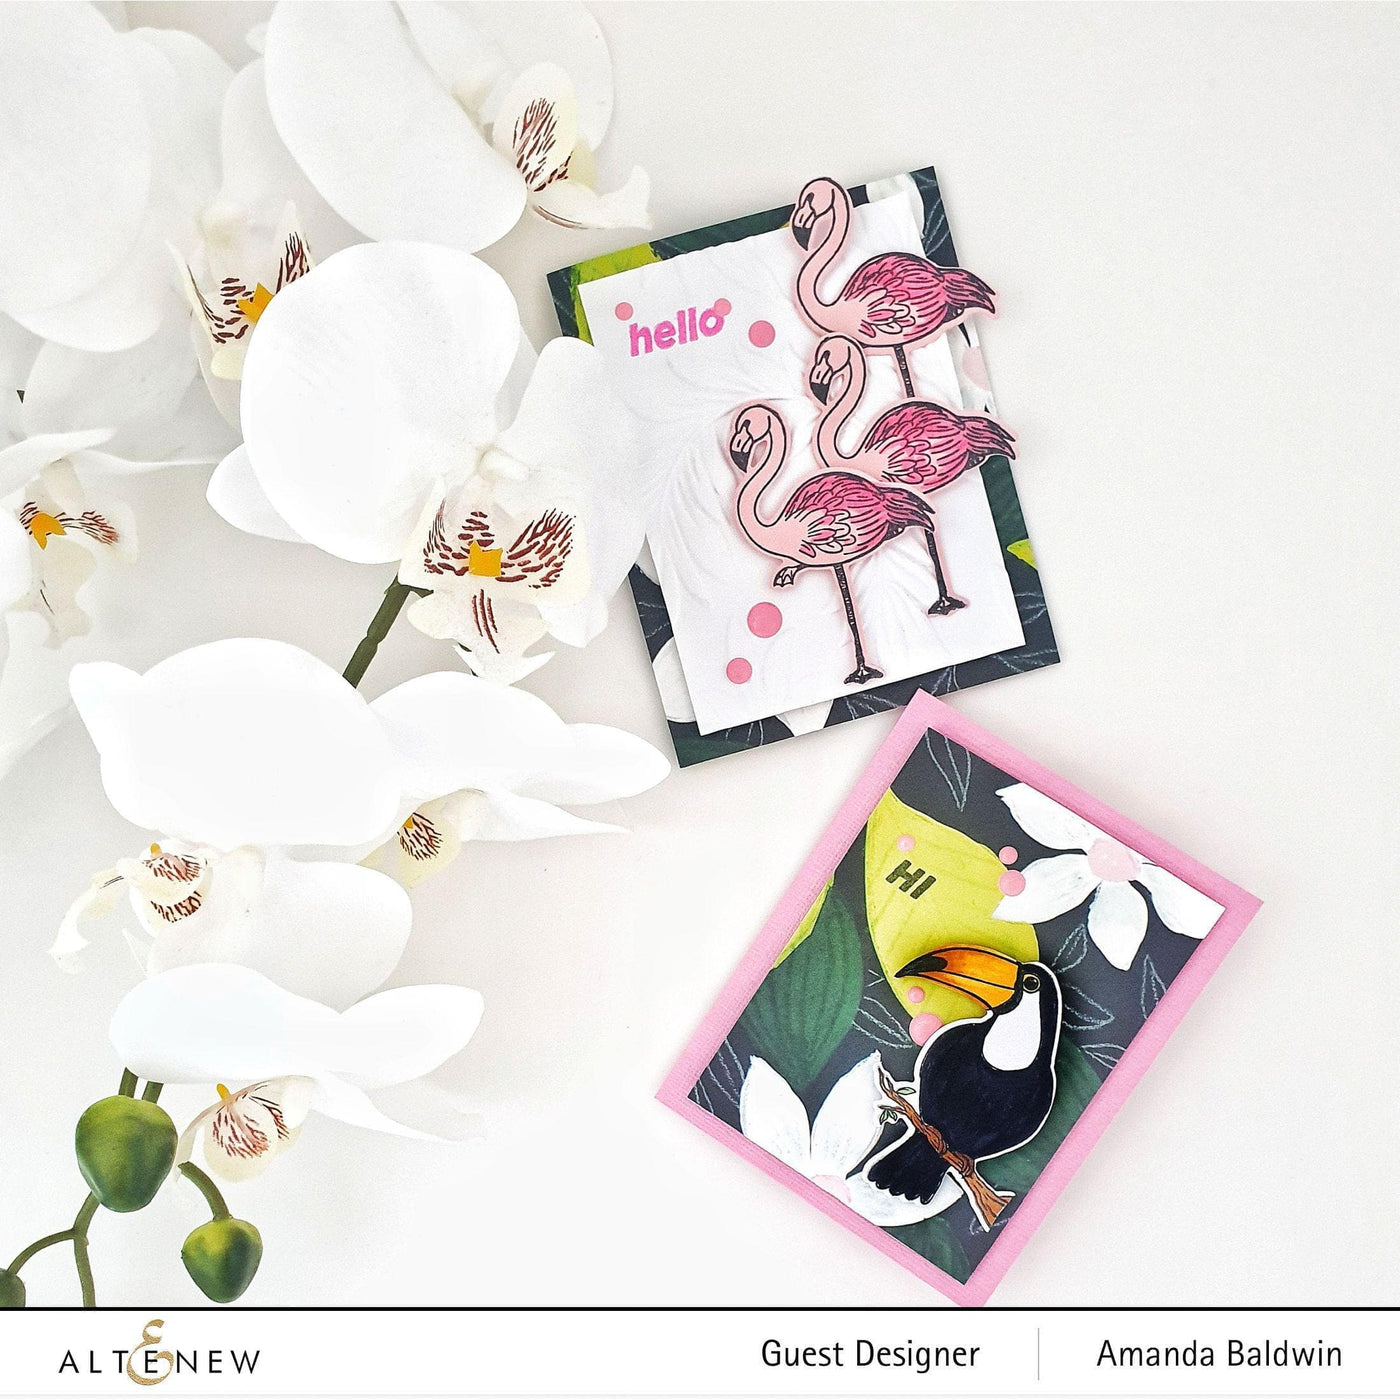 Altenew Stamp & Die Bundle Poised Flamingo Stamp & Die Bundle